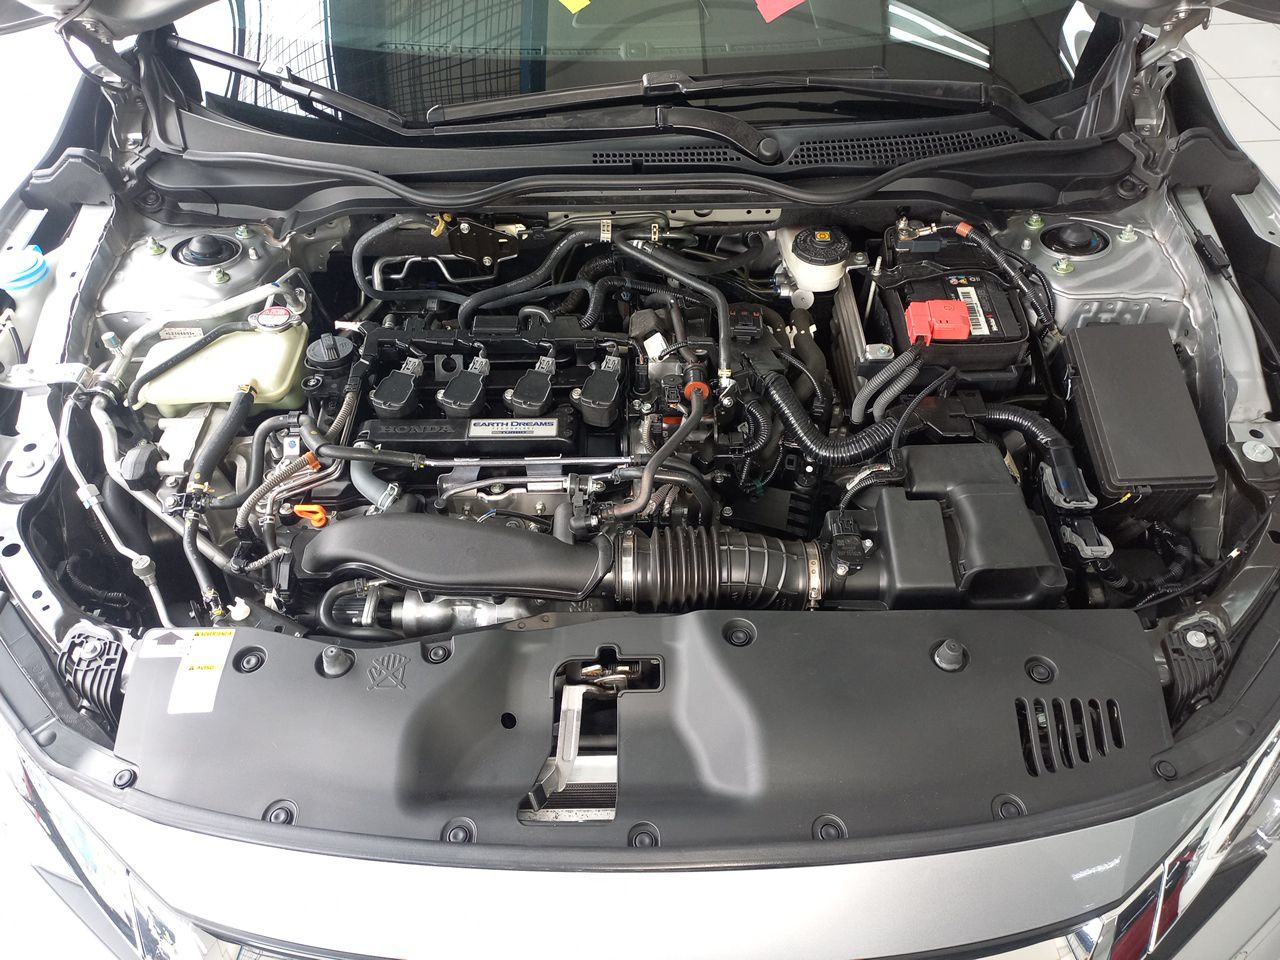 Seminovos Certificados HONDA CIVIC 1.5 16v Turbo Gasolina Touring 4p Cvt